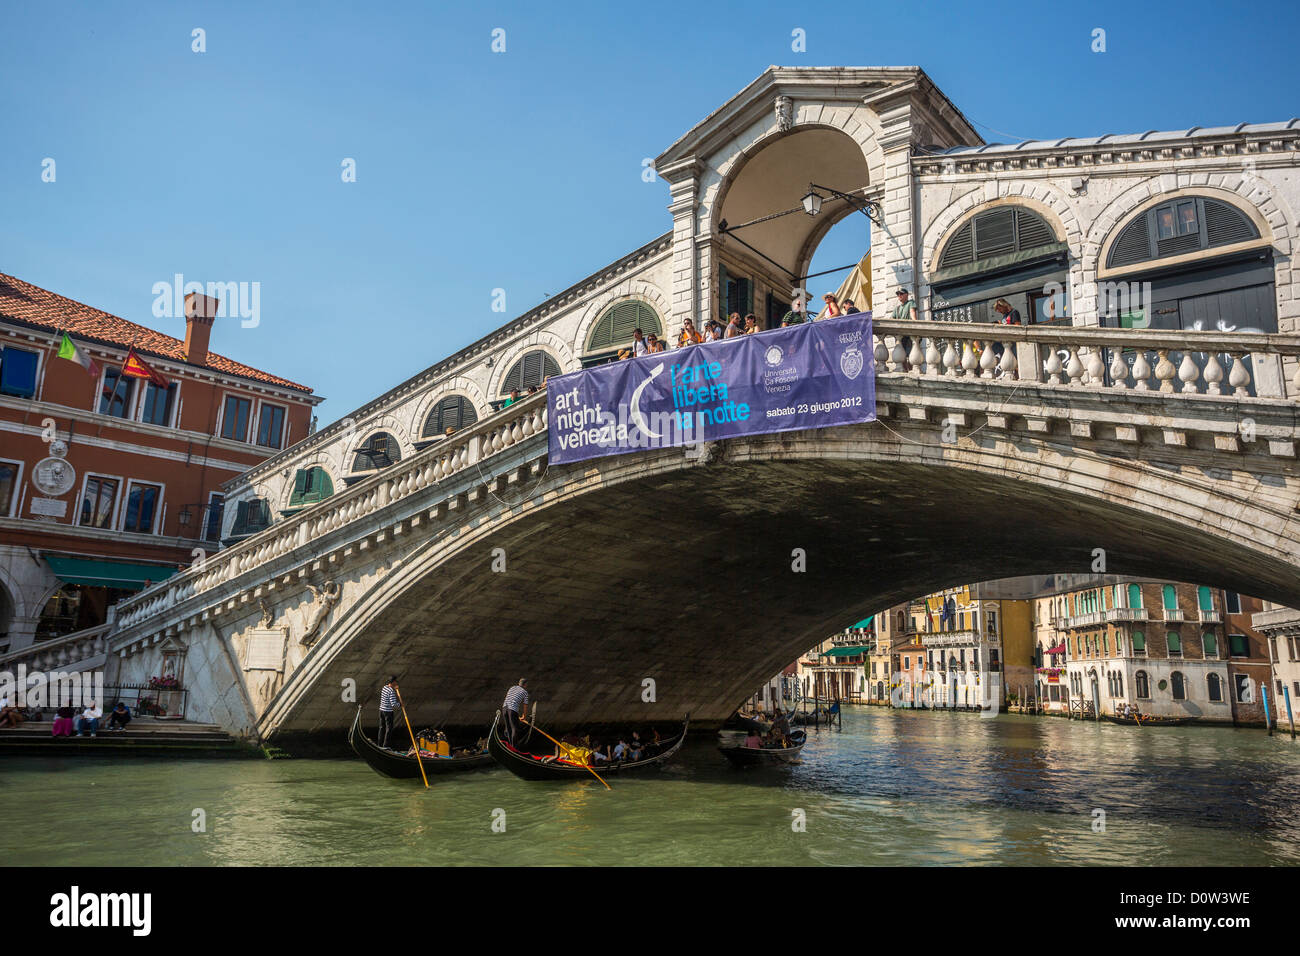 L'Italie, l'Europe, voyage, Venise, le Rialto, le pont, l'architecture, gondole, gondoliere, Canal Grande, l'histoire, les couleurs, le tourisme, l'Unesco Banque D'Images